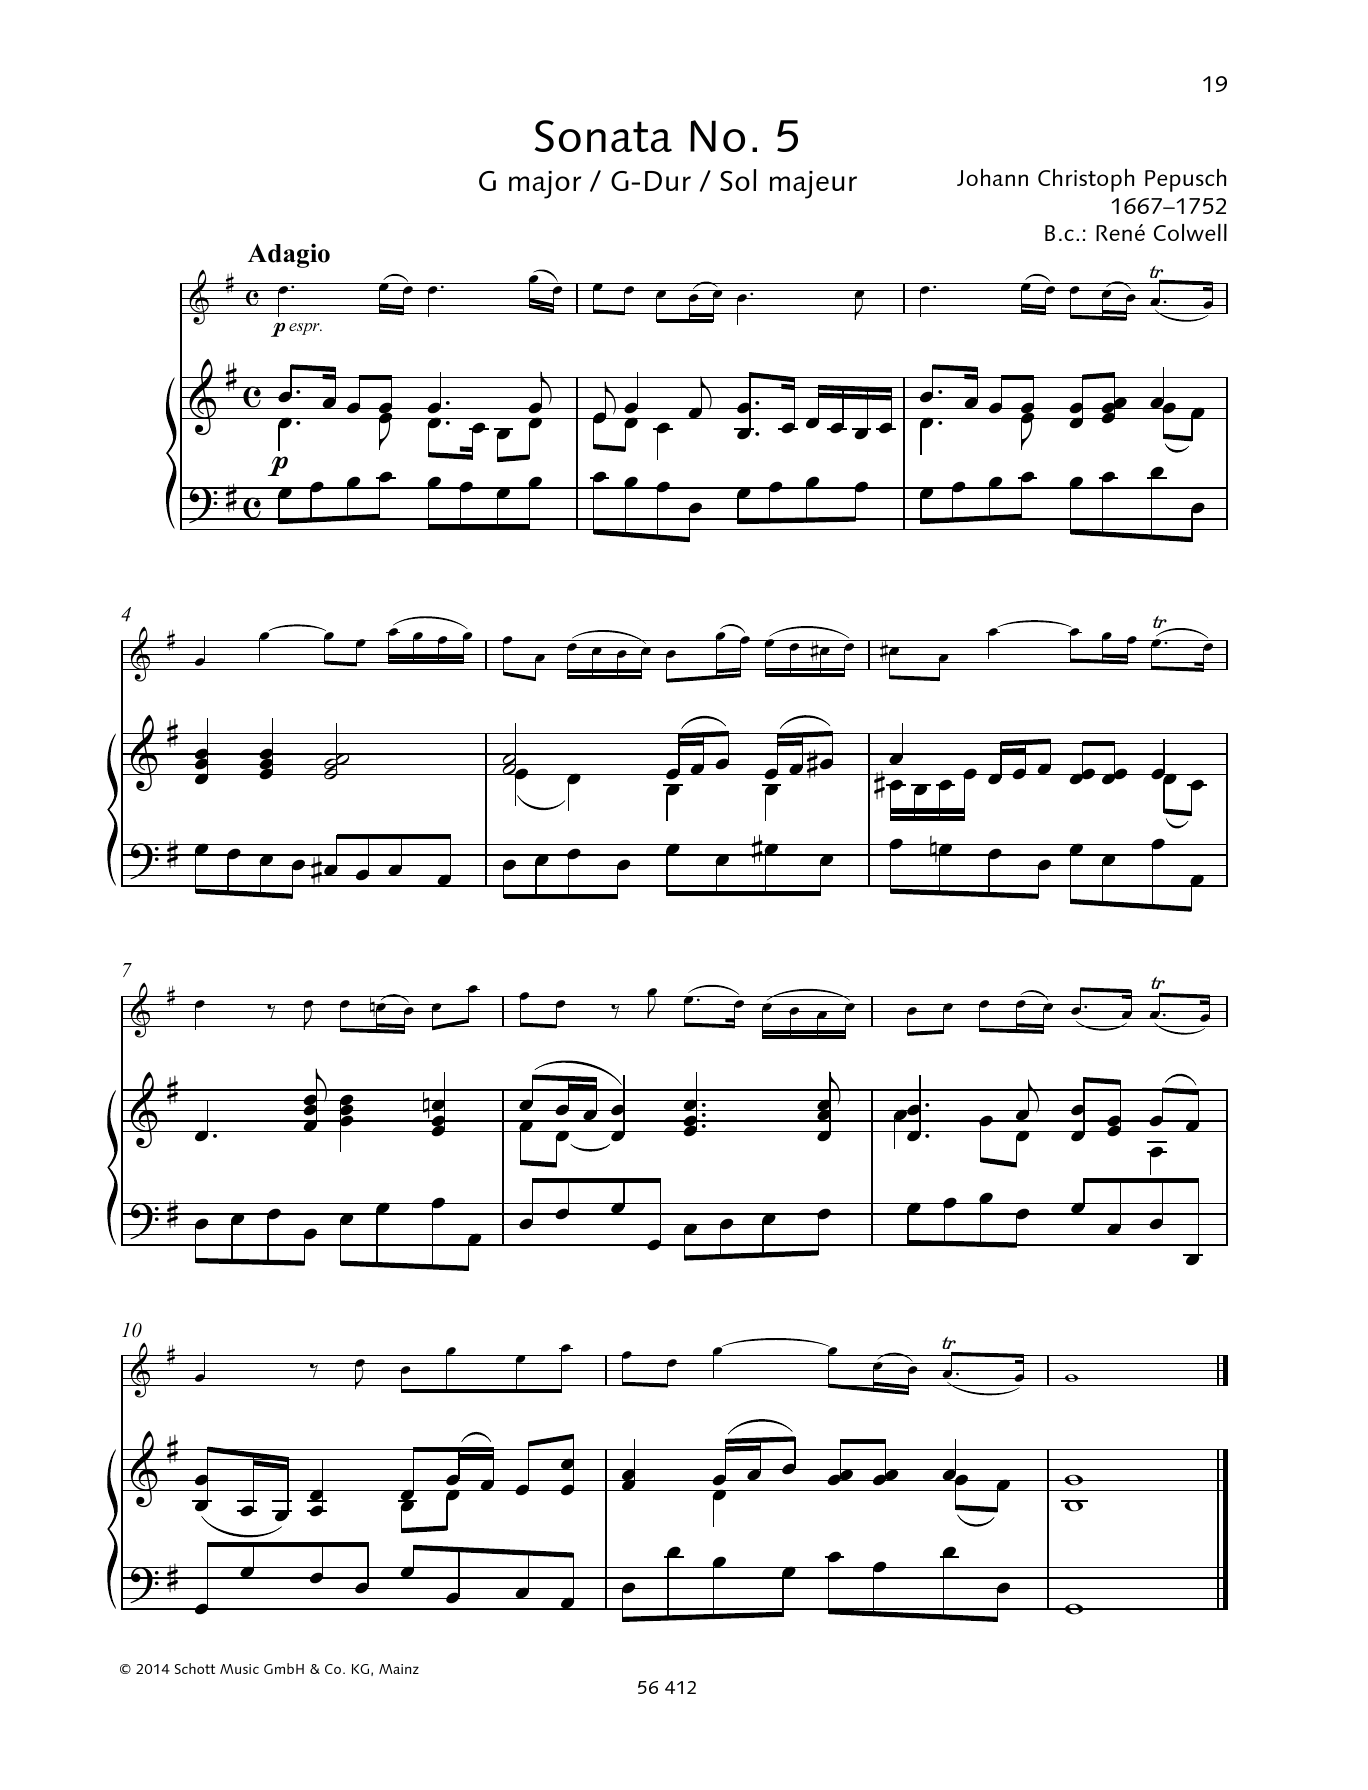 Sonata No. 5 G major sheet music